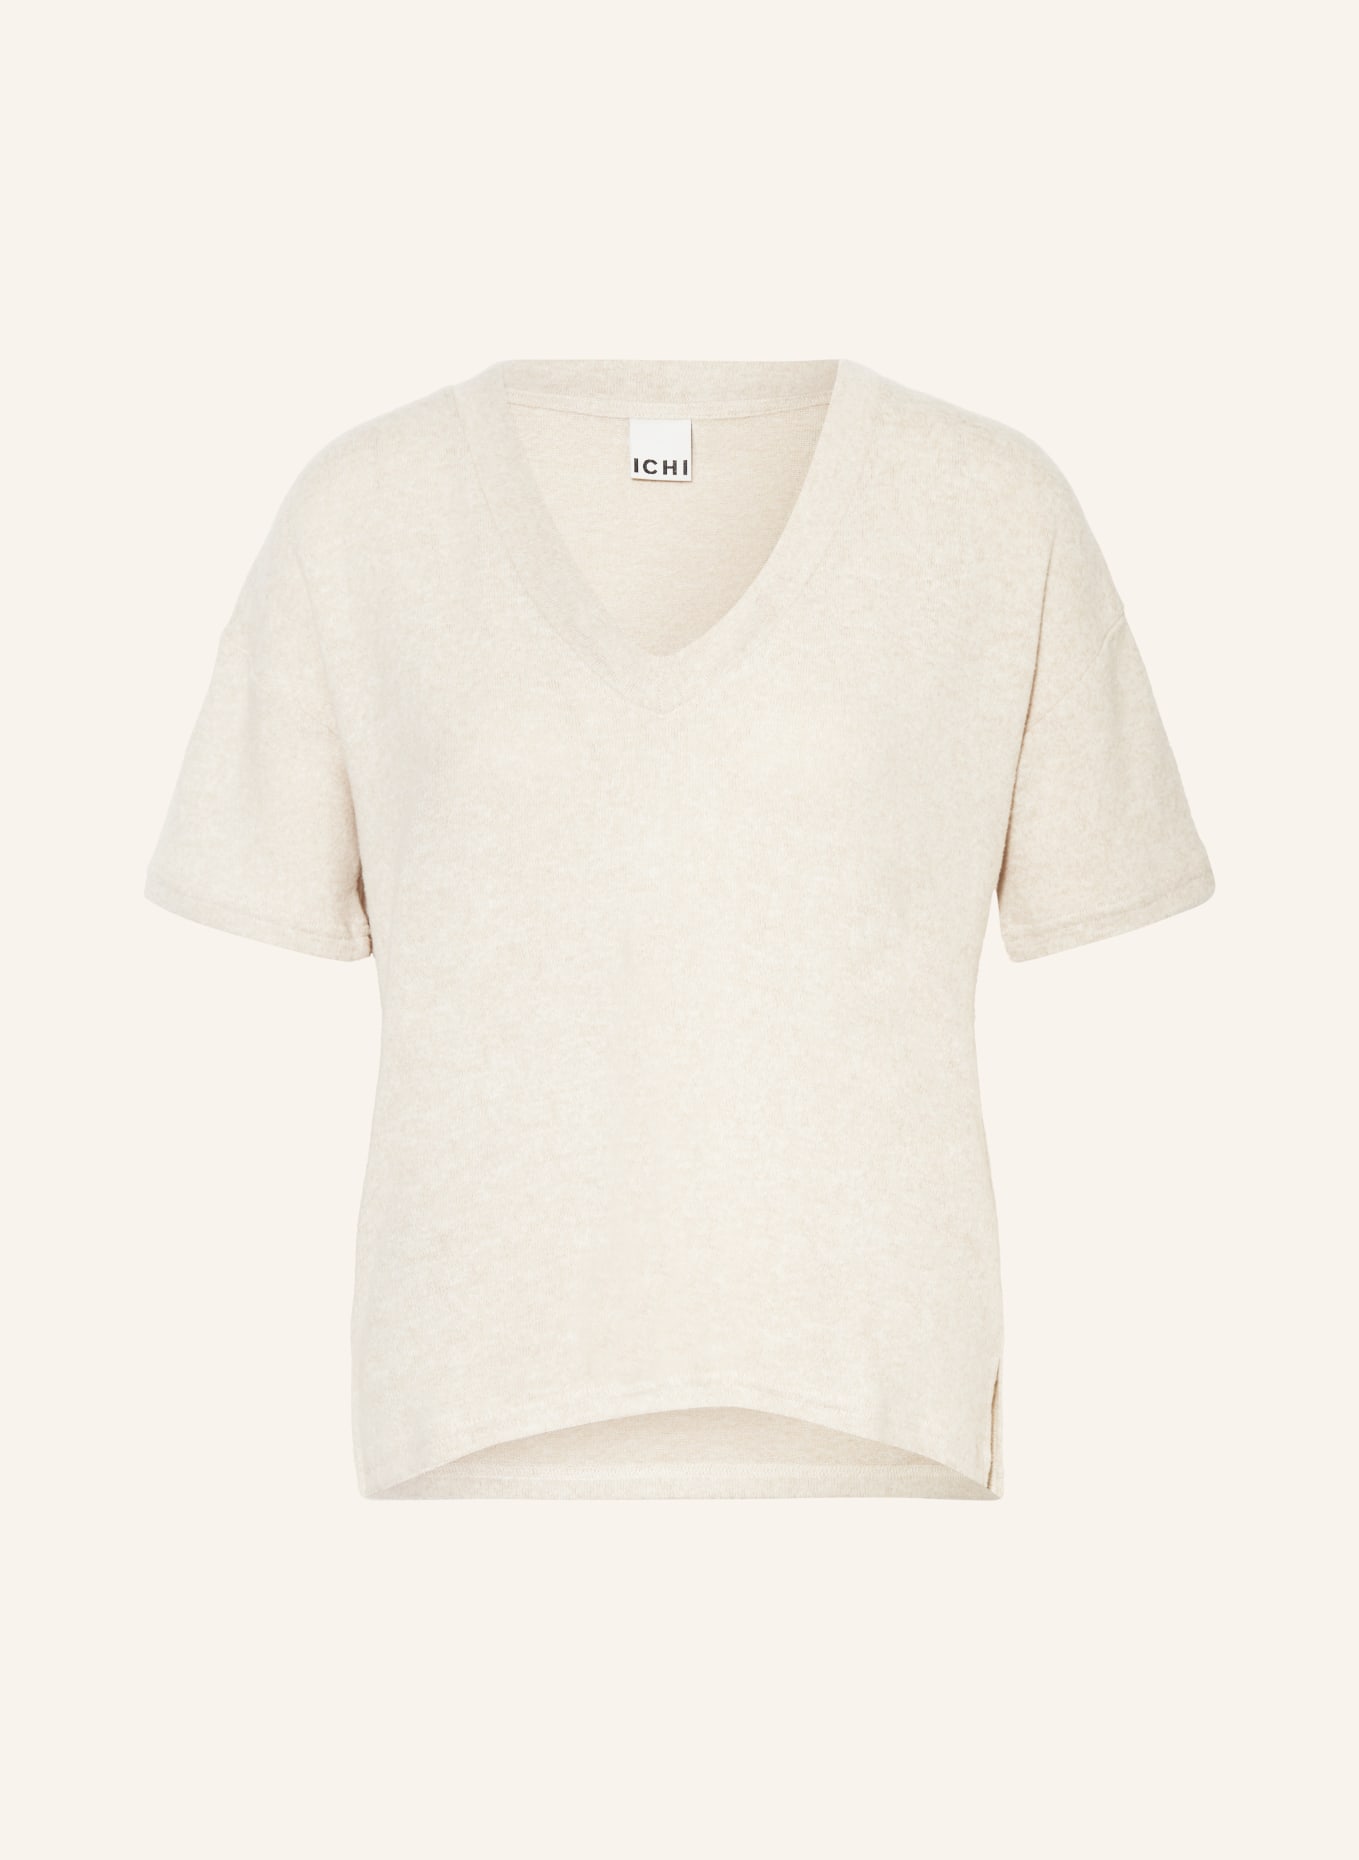 ICHI Knit shirt IHYOSE, Color: BEIGE (Image 1)